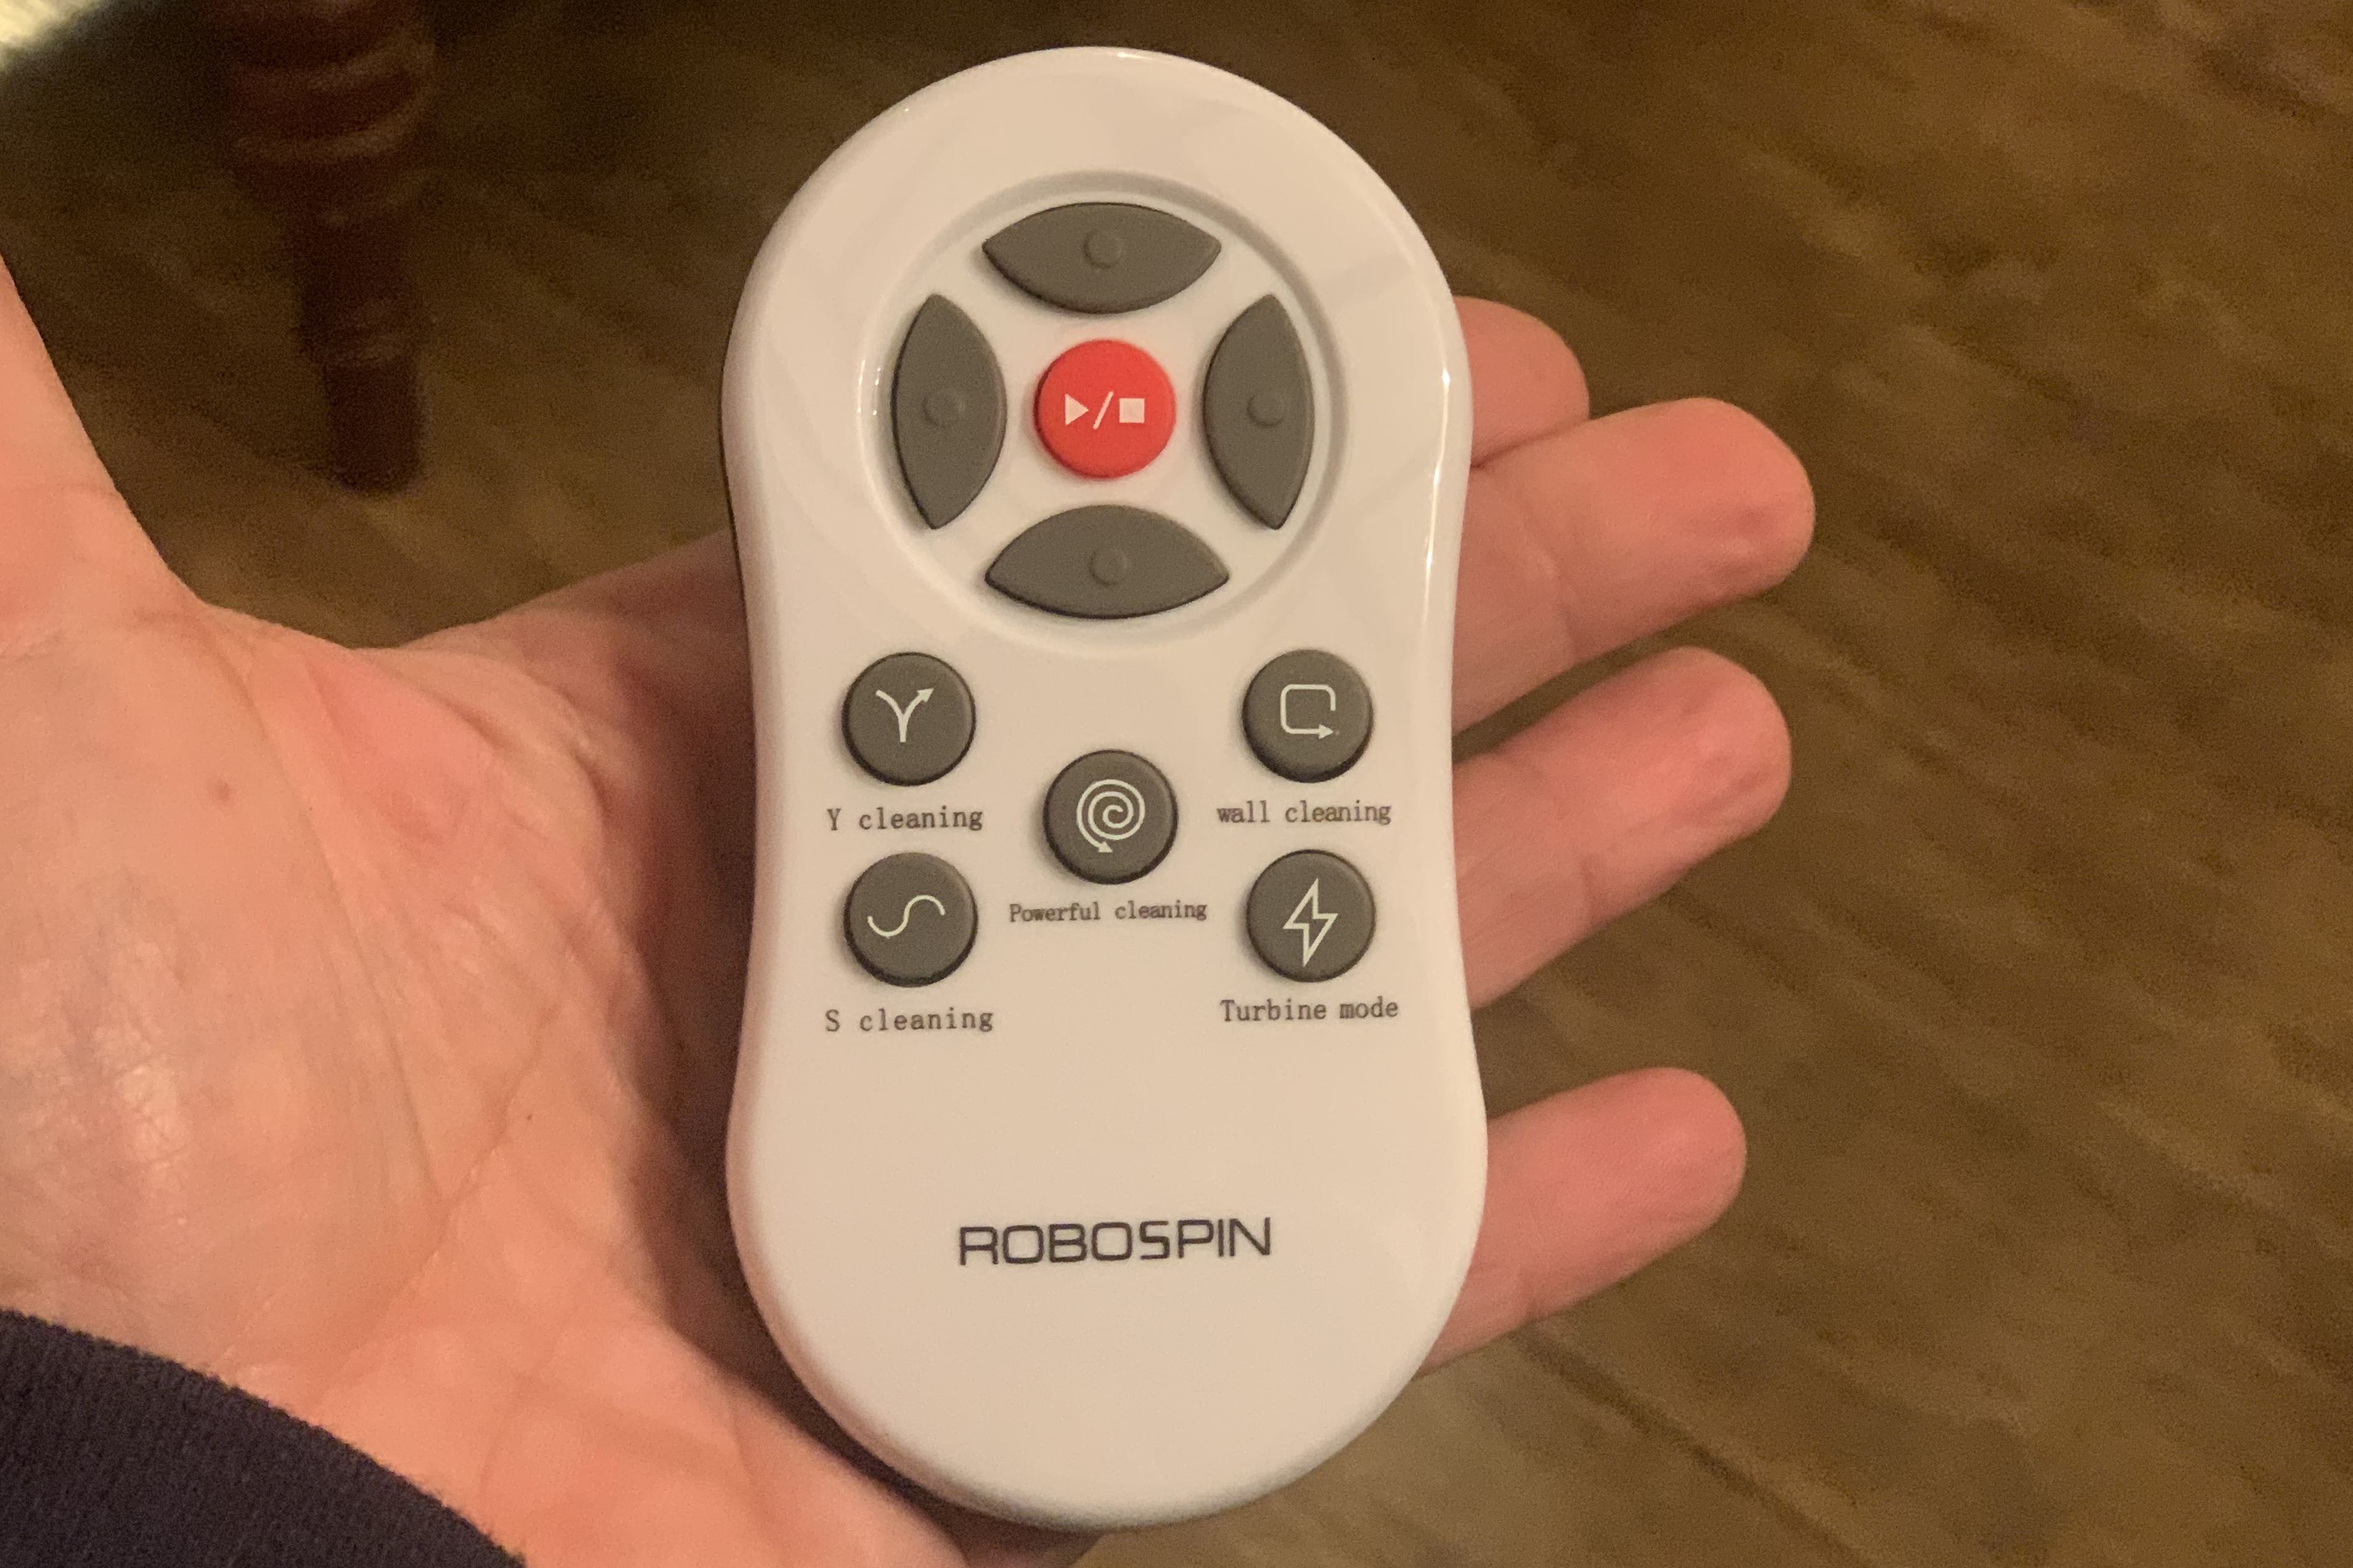 robospin remote control for robot mop